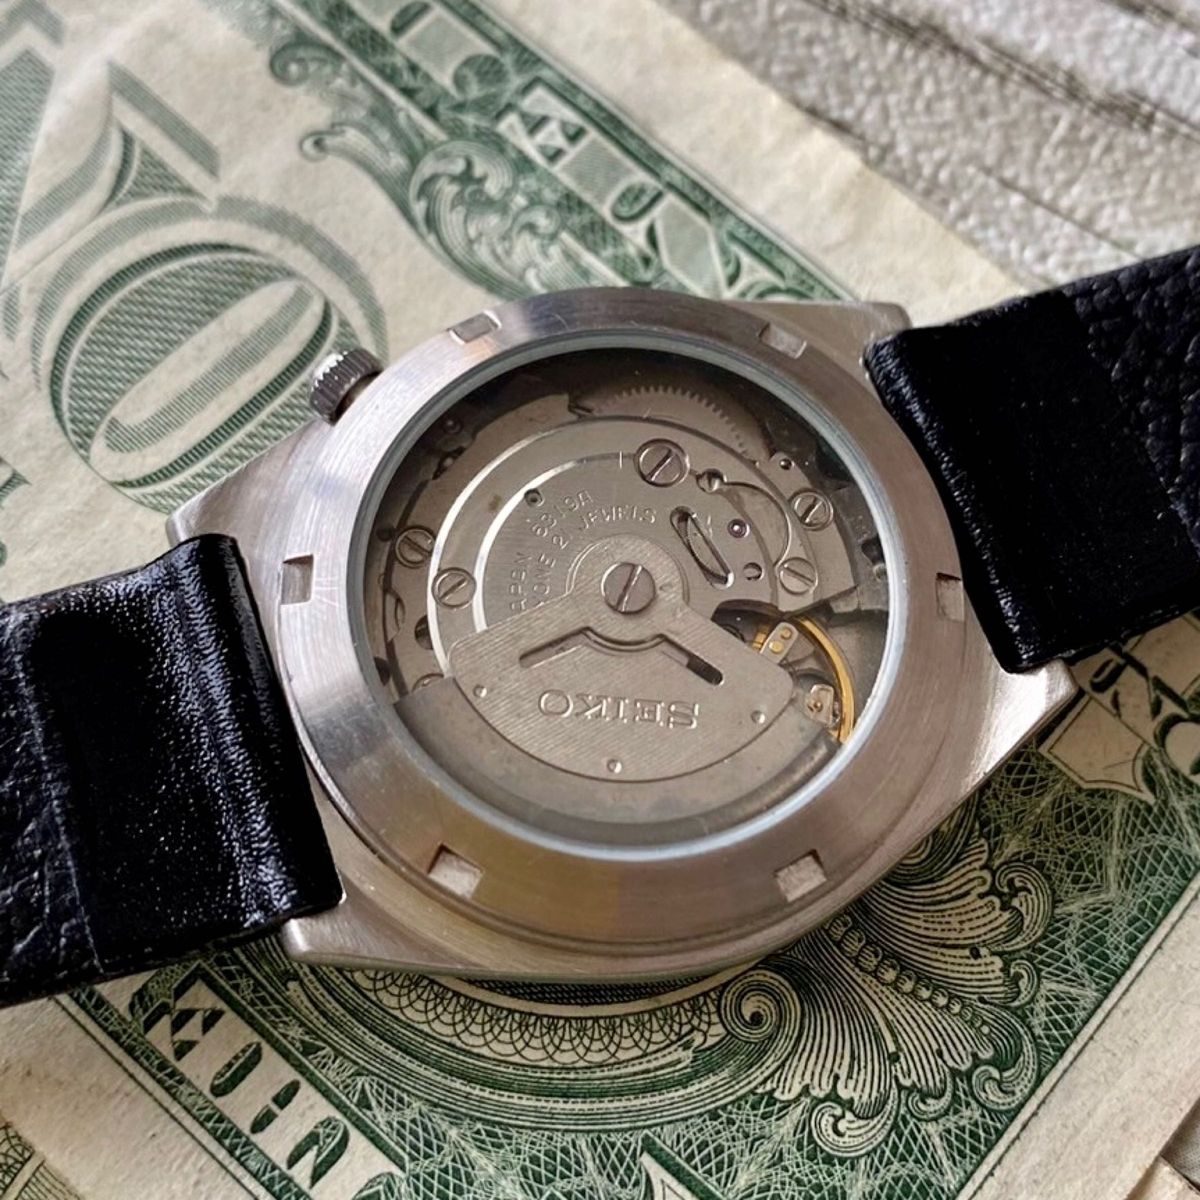 【レトロな色合い】セイコー5 メンズ腕時計 グレー 自動巻き ヴィンテージ